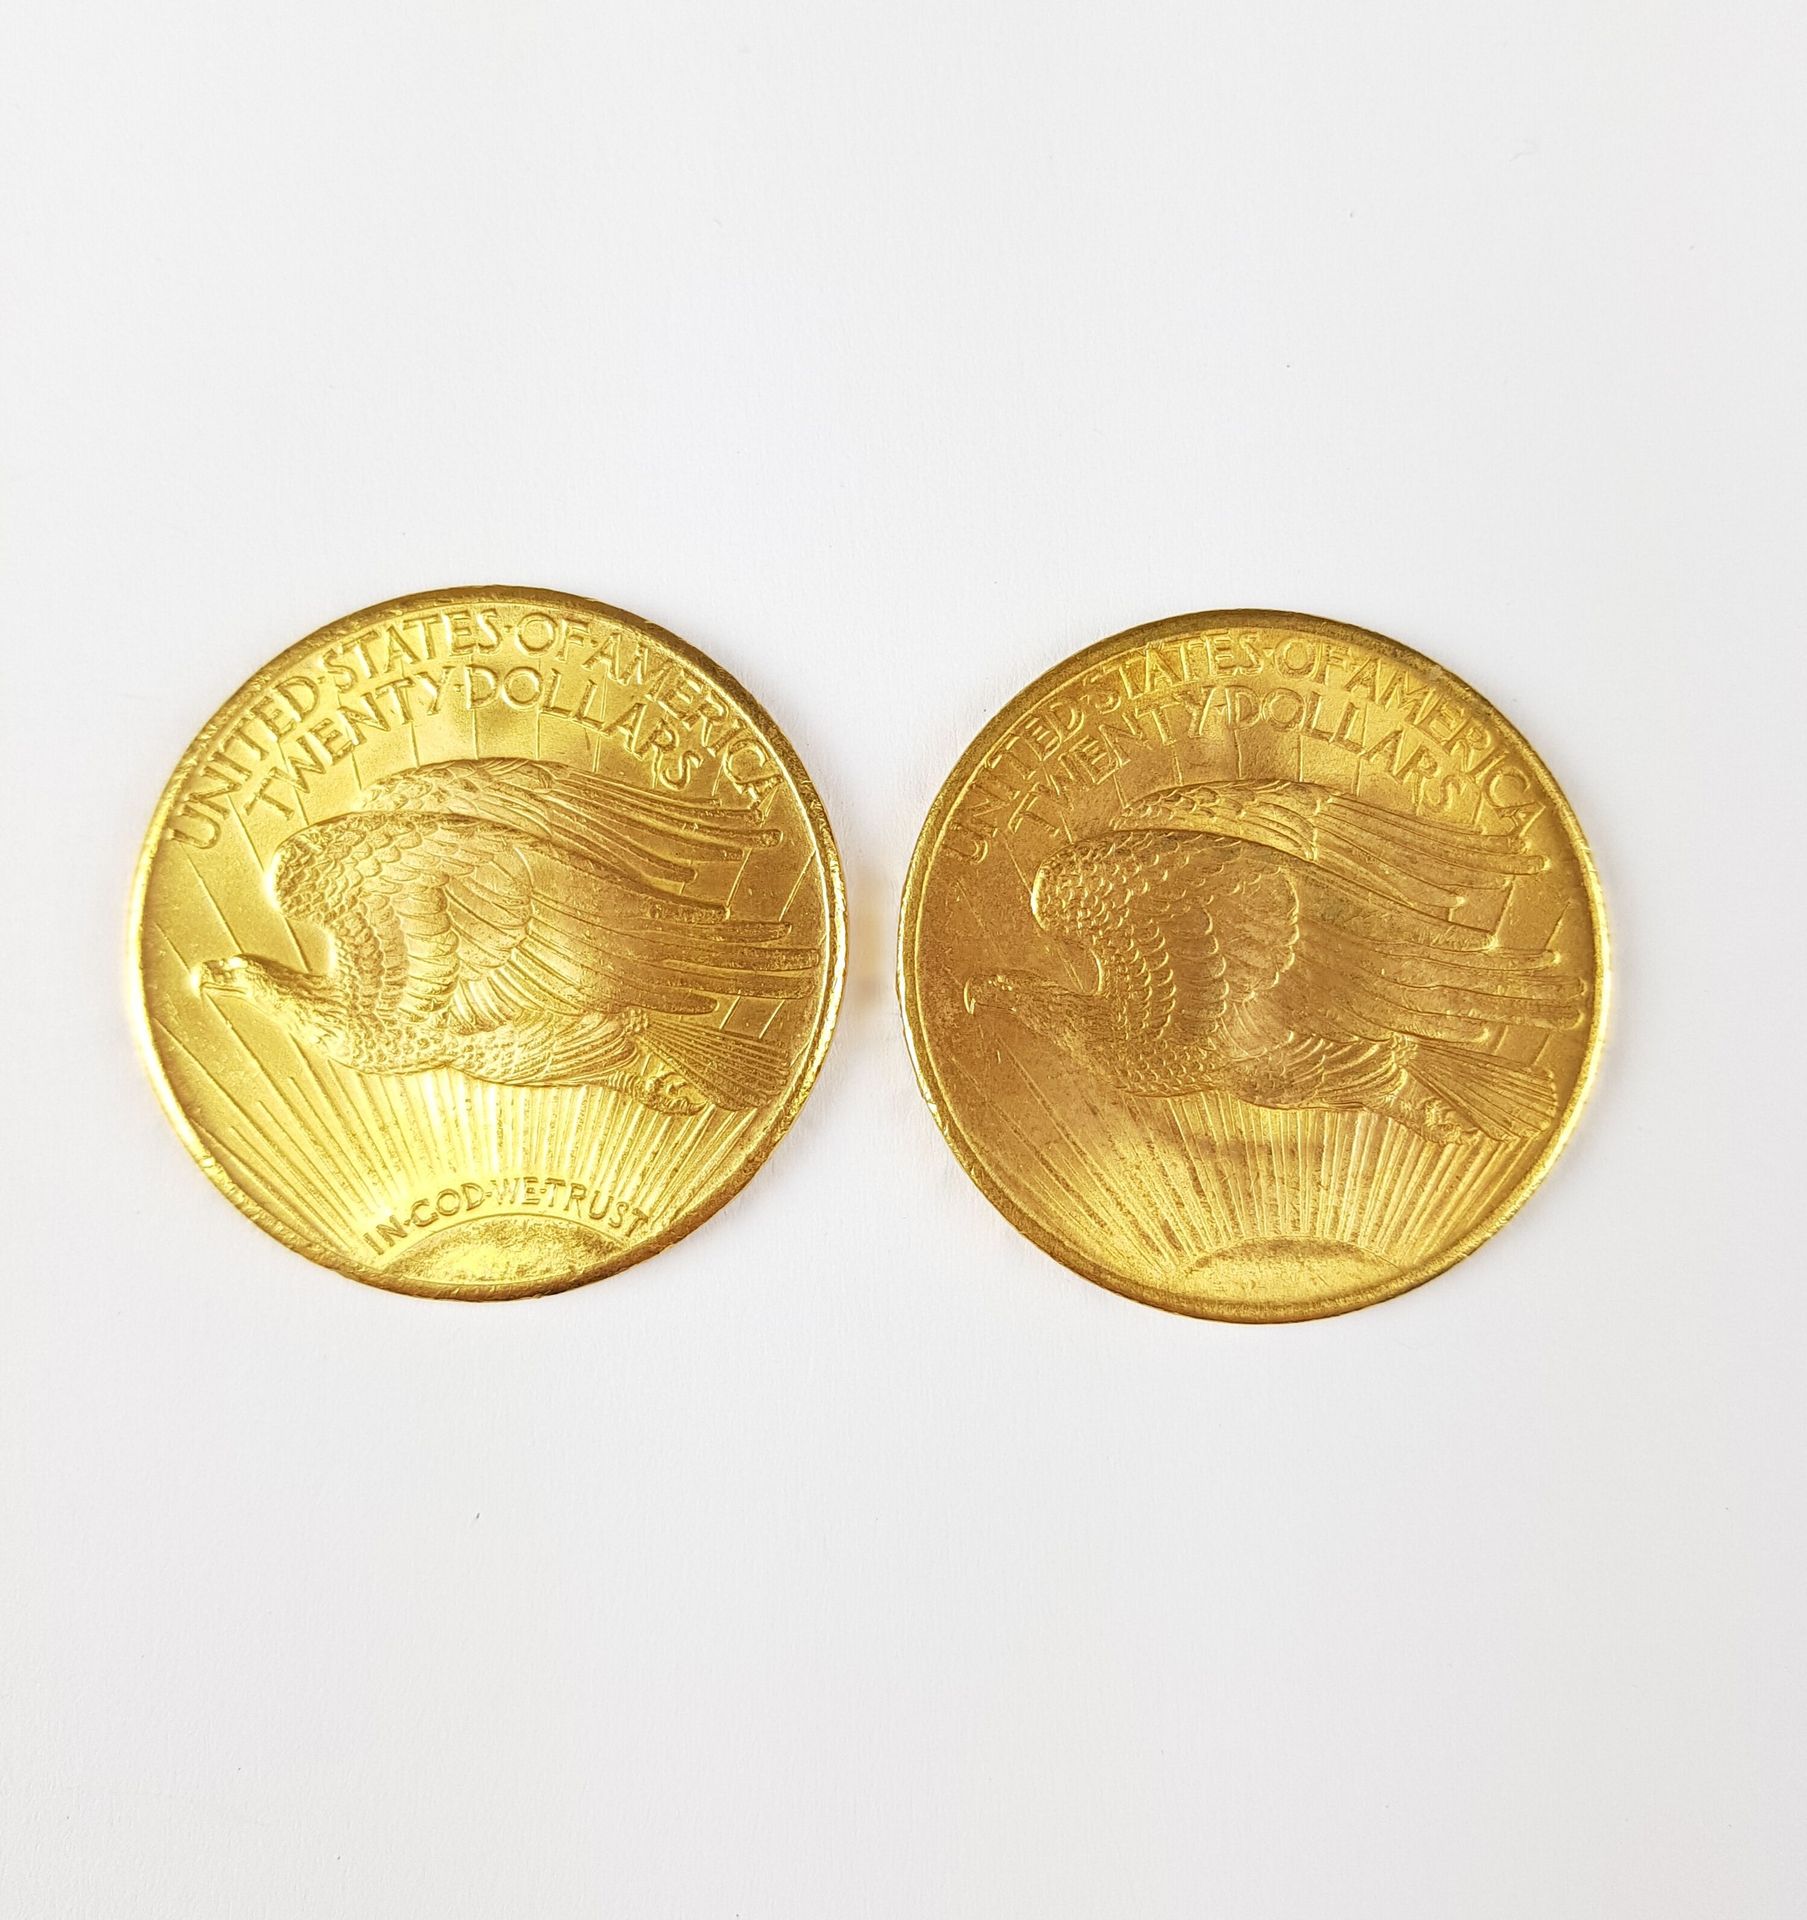 Null DOS Monedas de Oro de 20 US$, 1908 y 1927
Peso total: 66,95 g